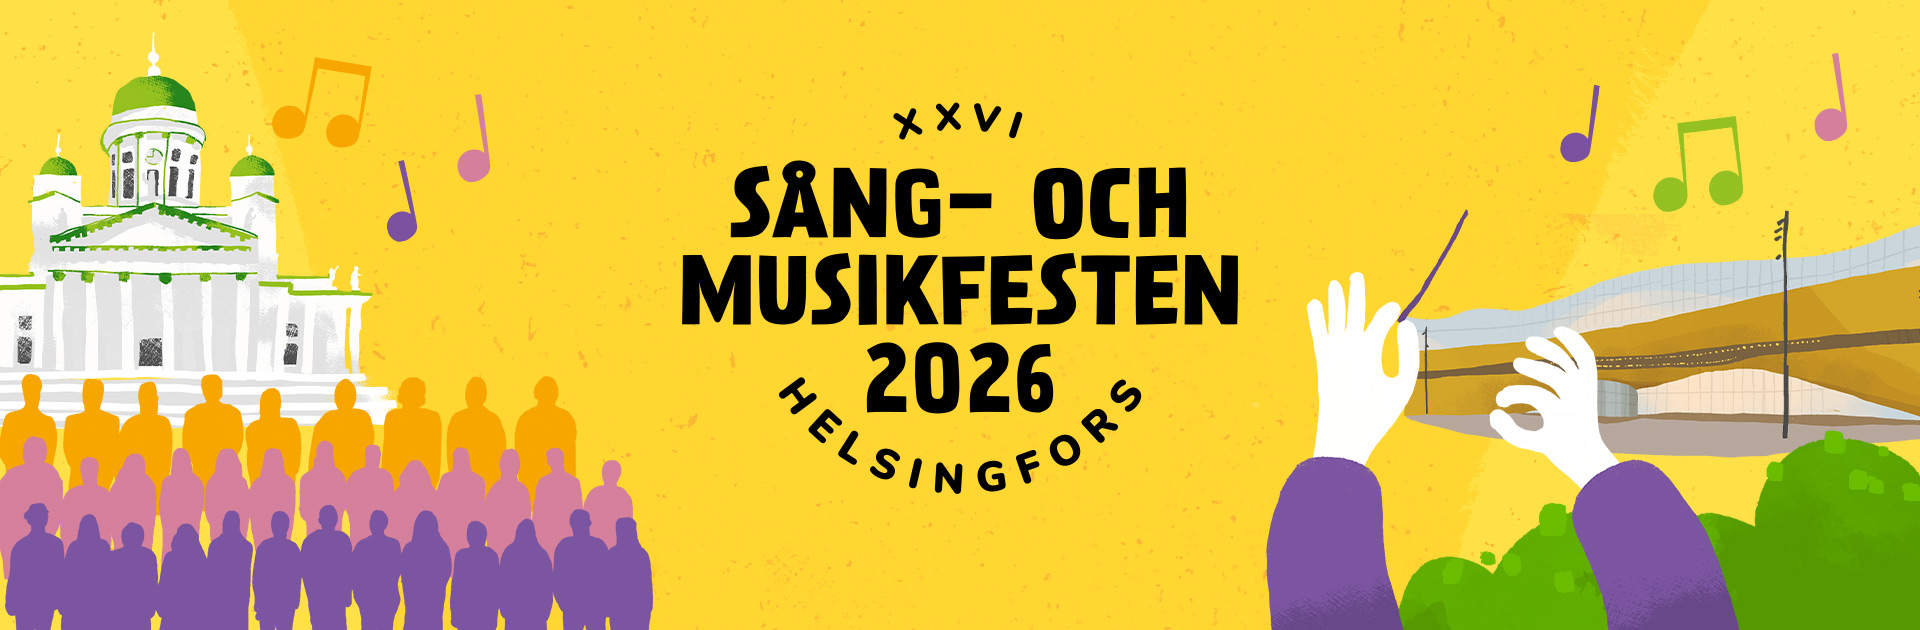 Sång- och musikfesten 2026 i Helsingfors 11-14 juni